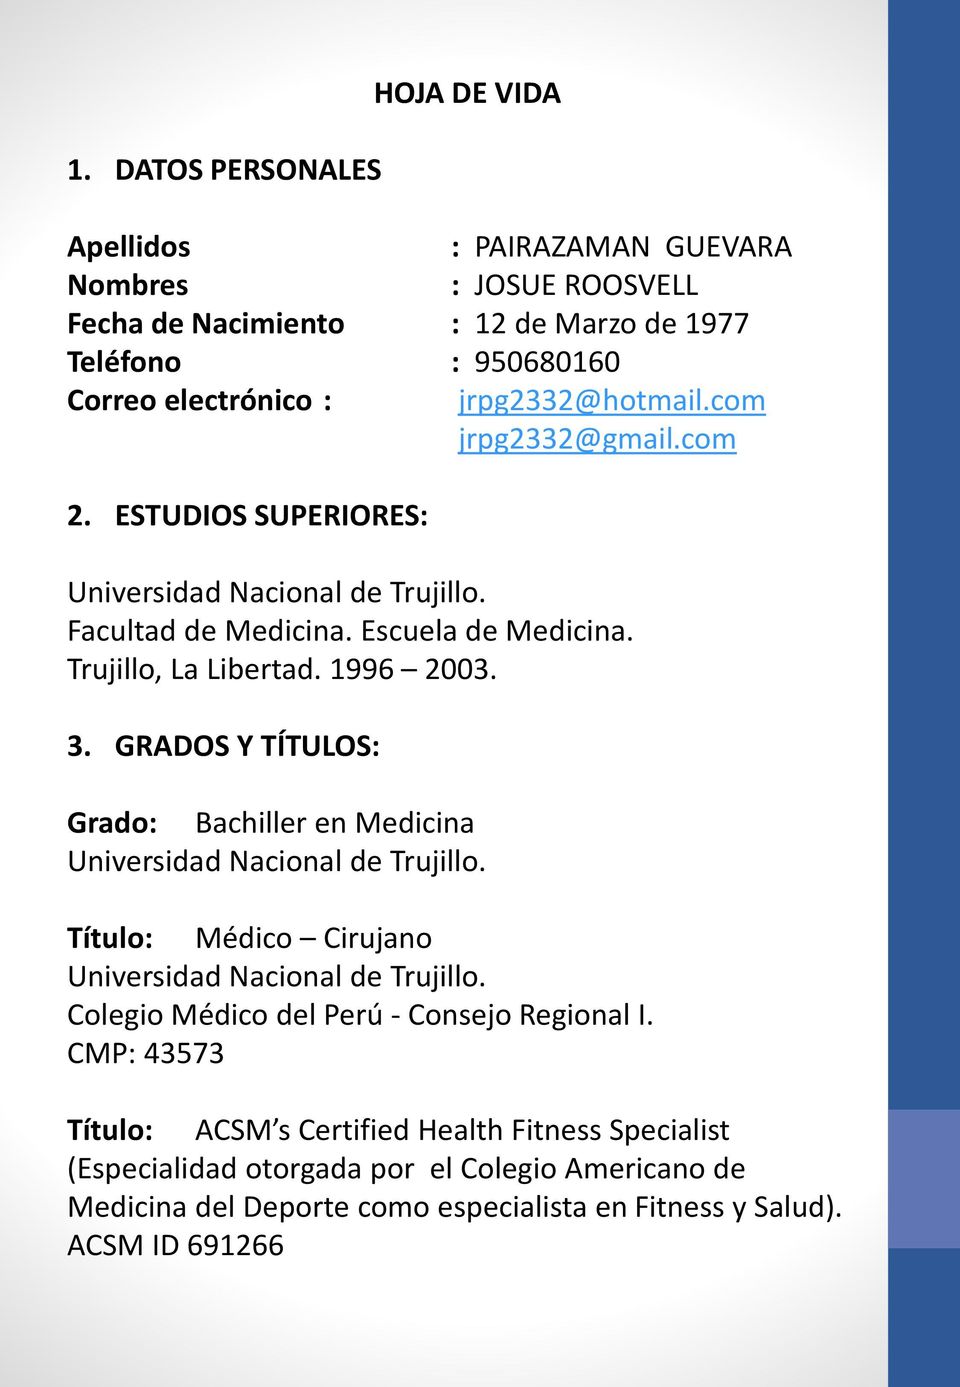 GRADOS Y TÍTULOS: Grado: Bachiller en Medicina Universidad Nacional de Trujillo. Título: Médico Cirujano Universidad Nacional de Trujillo.